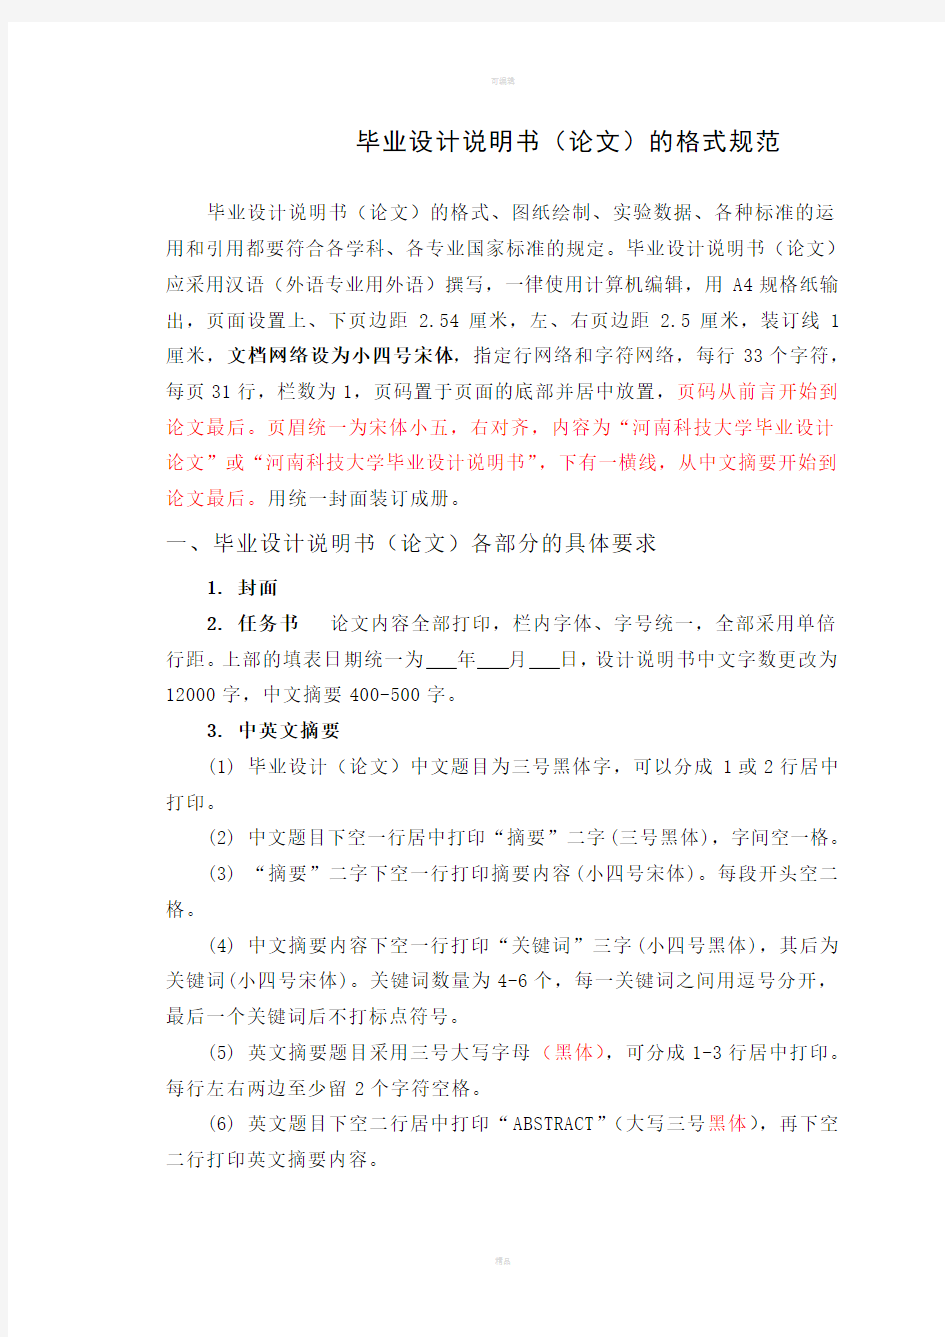 河南科技大学毕业设计说明书(论文)的格式规范